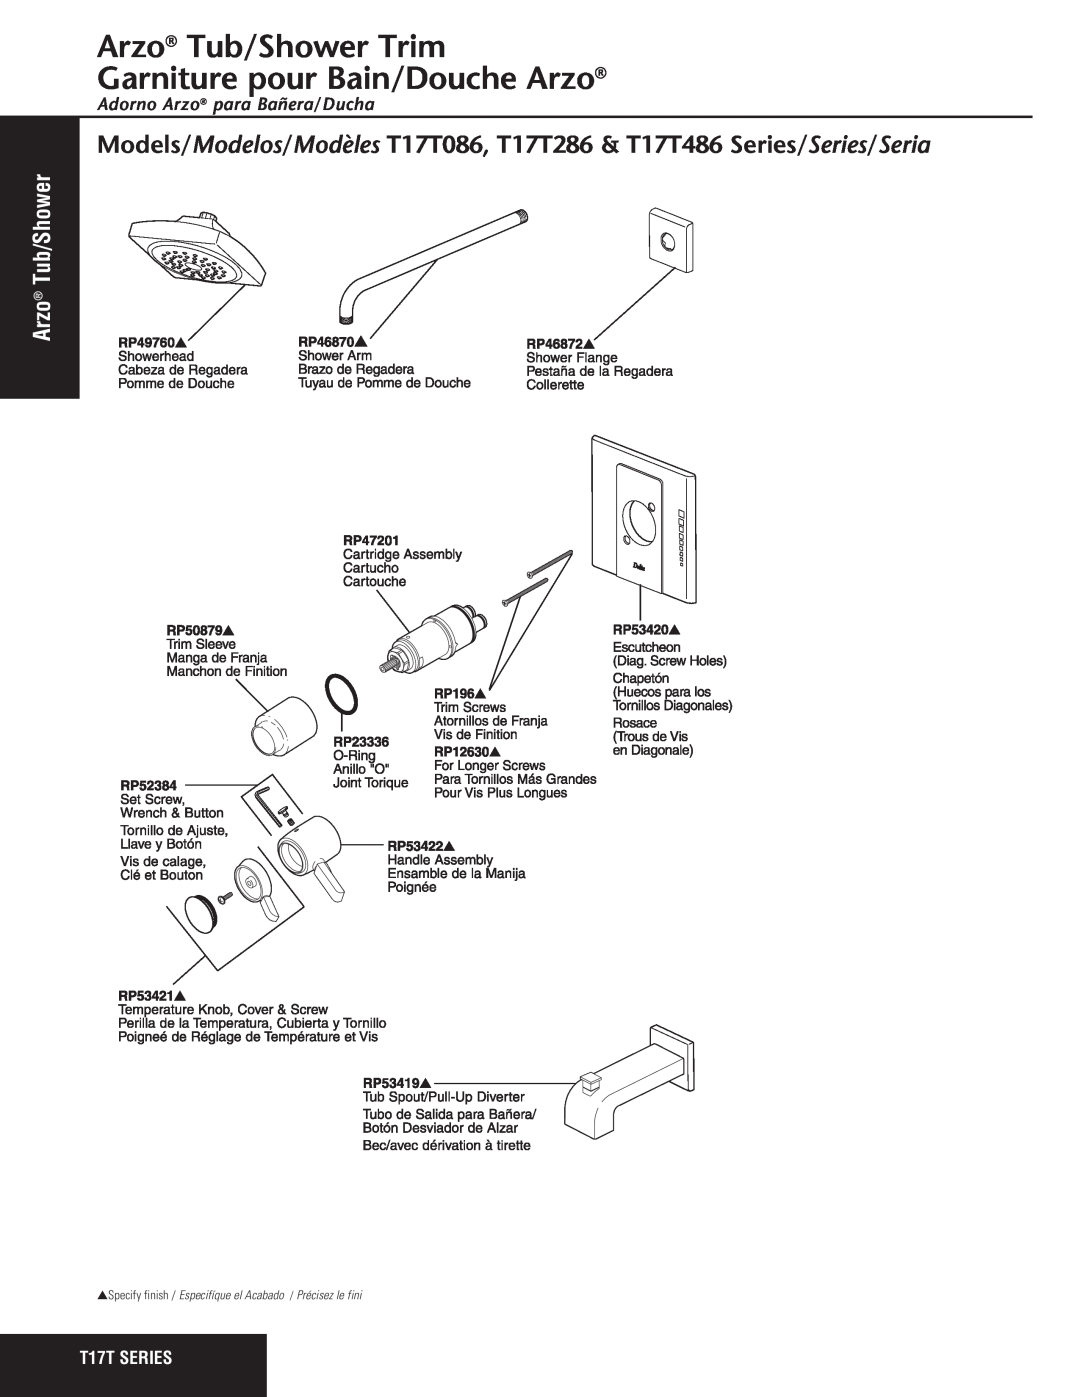 Delta T17T486 Series manual Arzo Tub/Shower Trim Garniture pour Bain/Douche Arzo, Adorno Arzo para Bañera/Ducha 